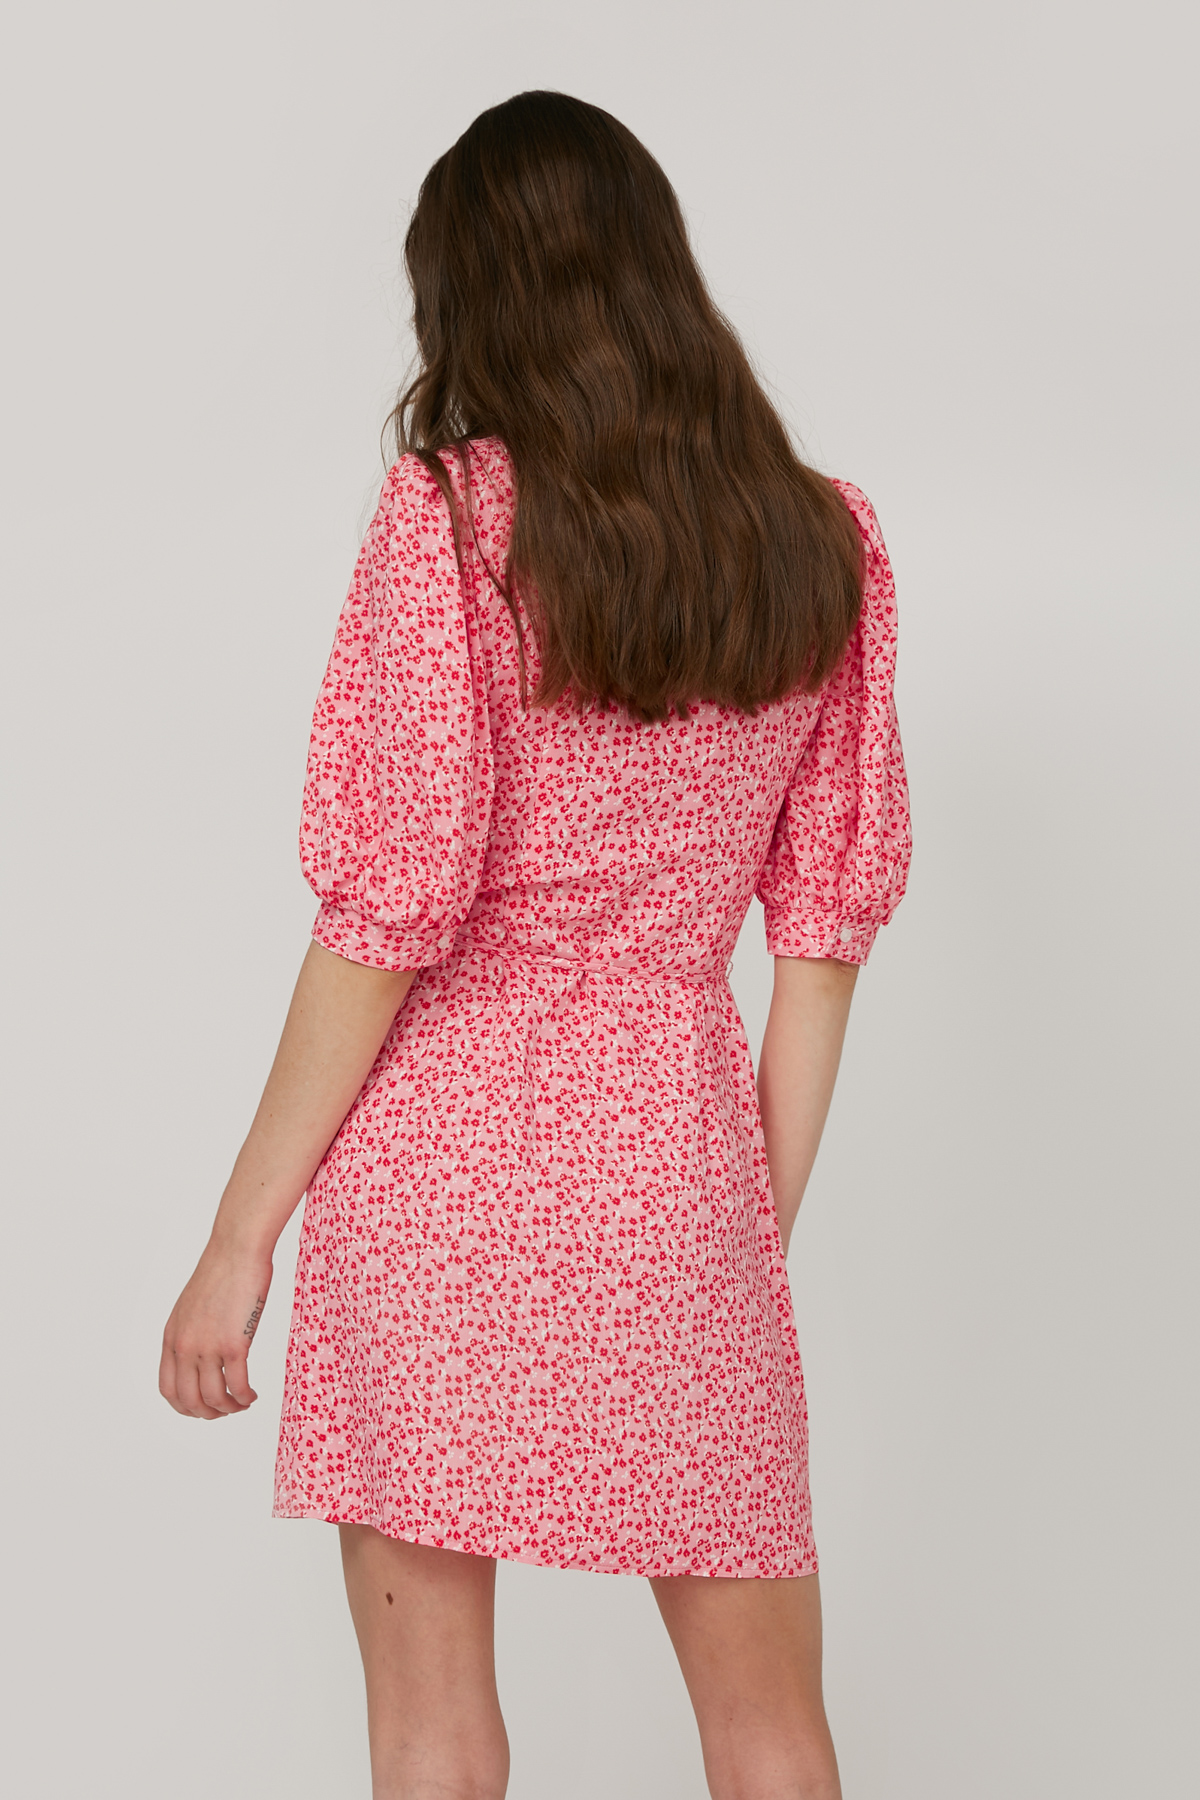 Короткое платье из вискозы розовое в цветочный принт, фото 5